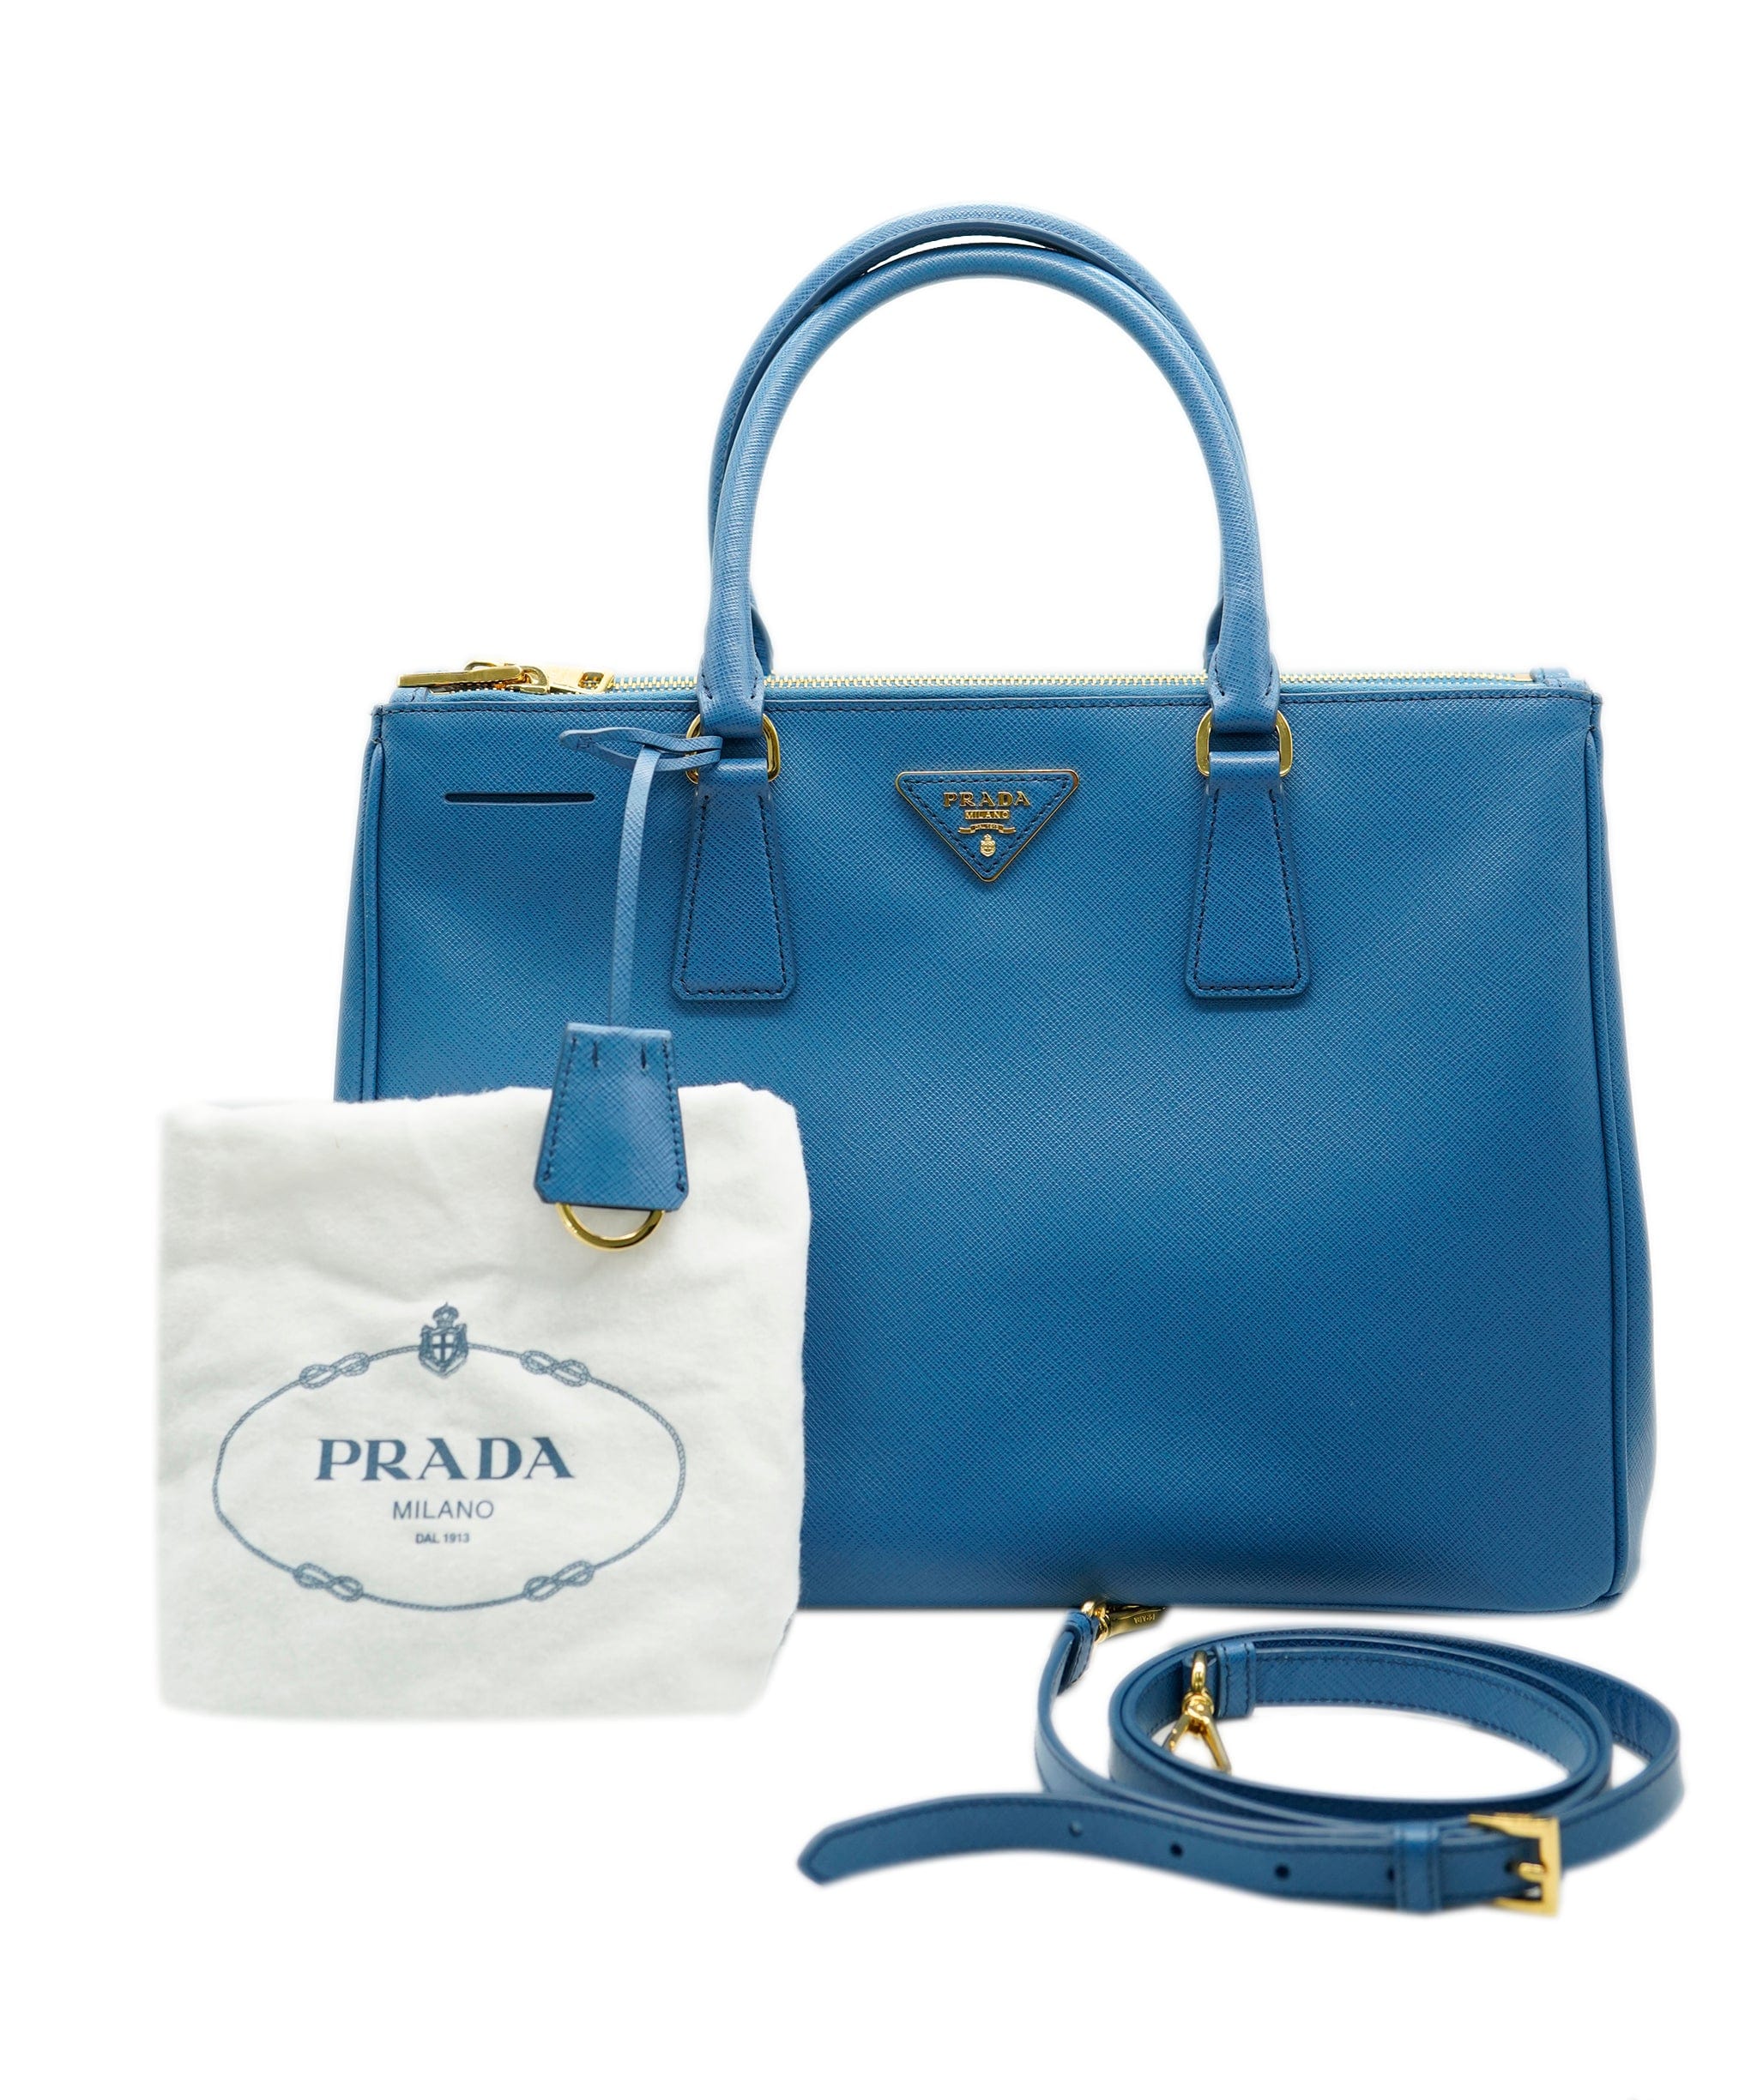 Prada Prada blue saffiano tote with GHW  - AJC0473